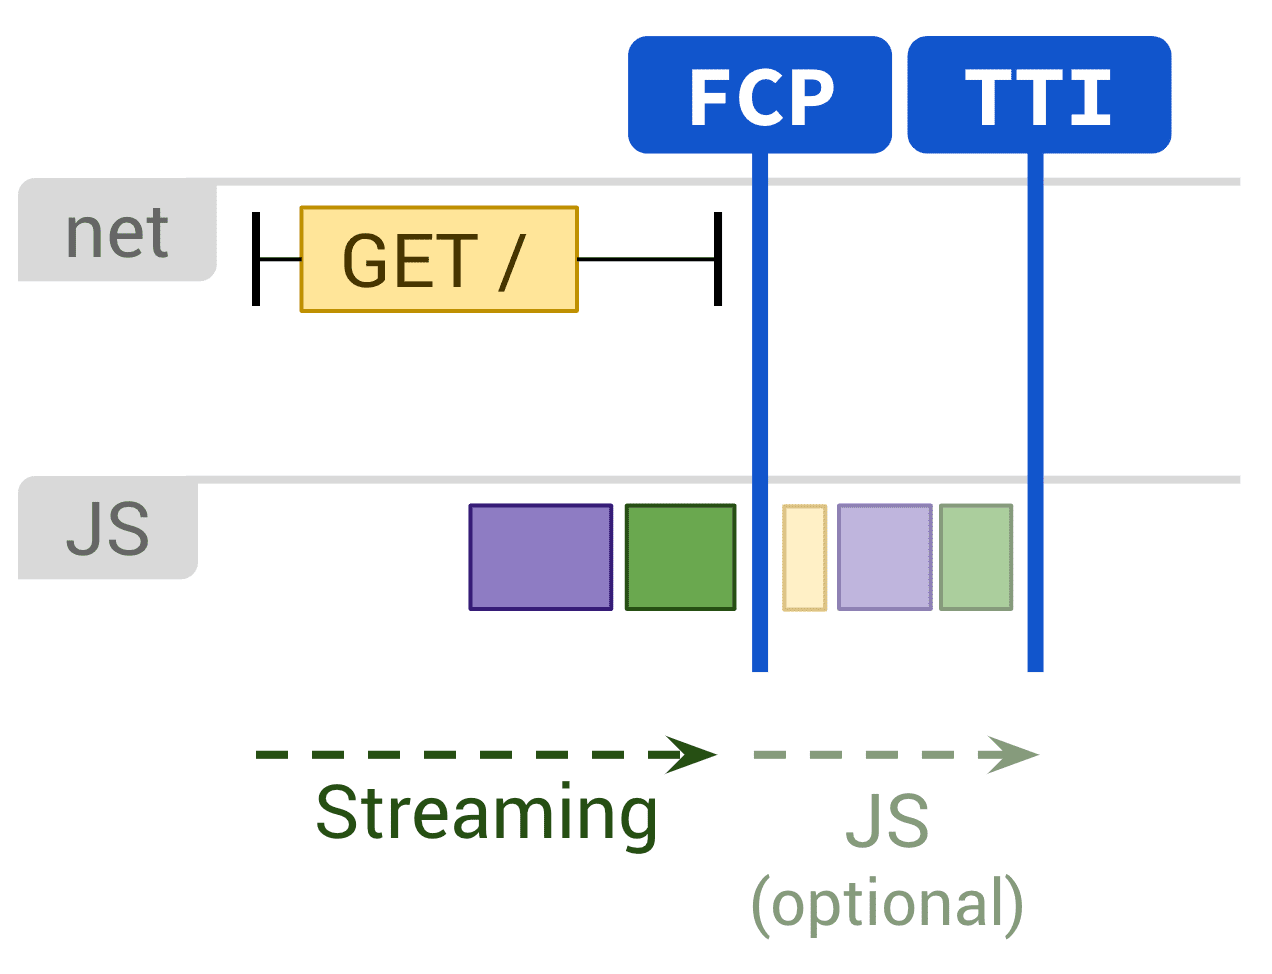 Diagramm mit statischem Rendering und optionaler JS-Ausführung, die sich auf FCP und TTI auswirken.